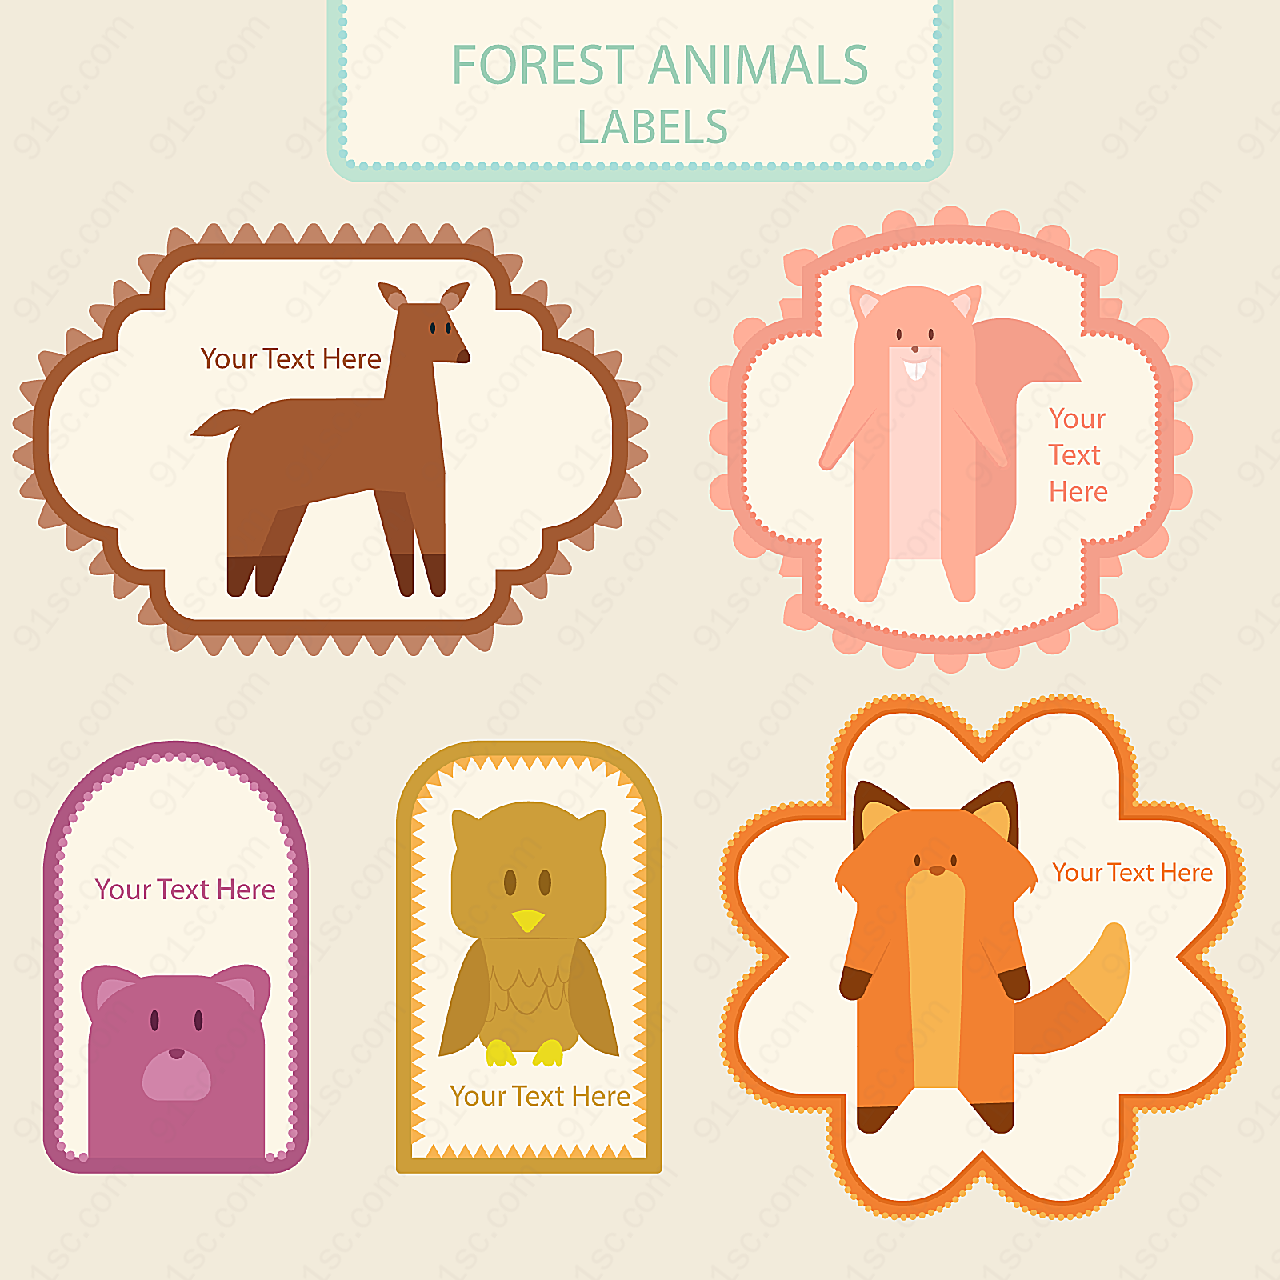 森林动物标签label矢量